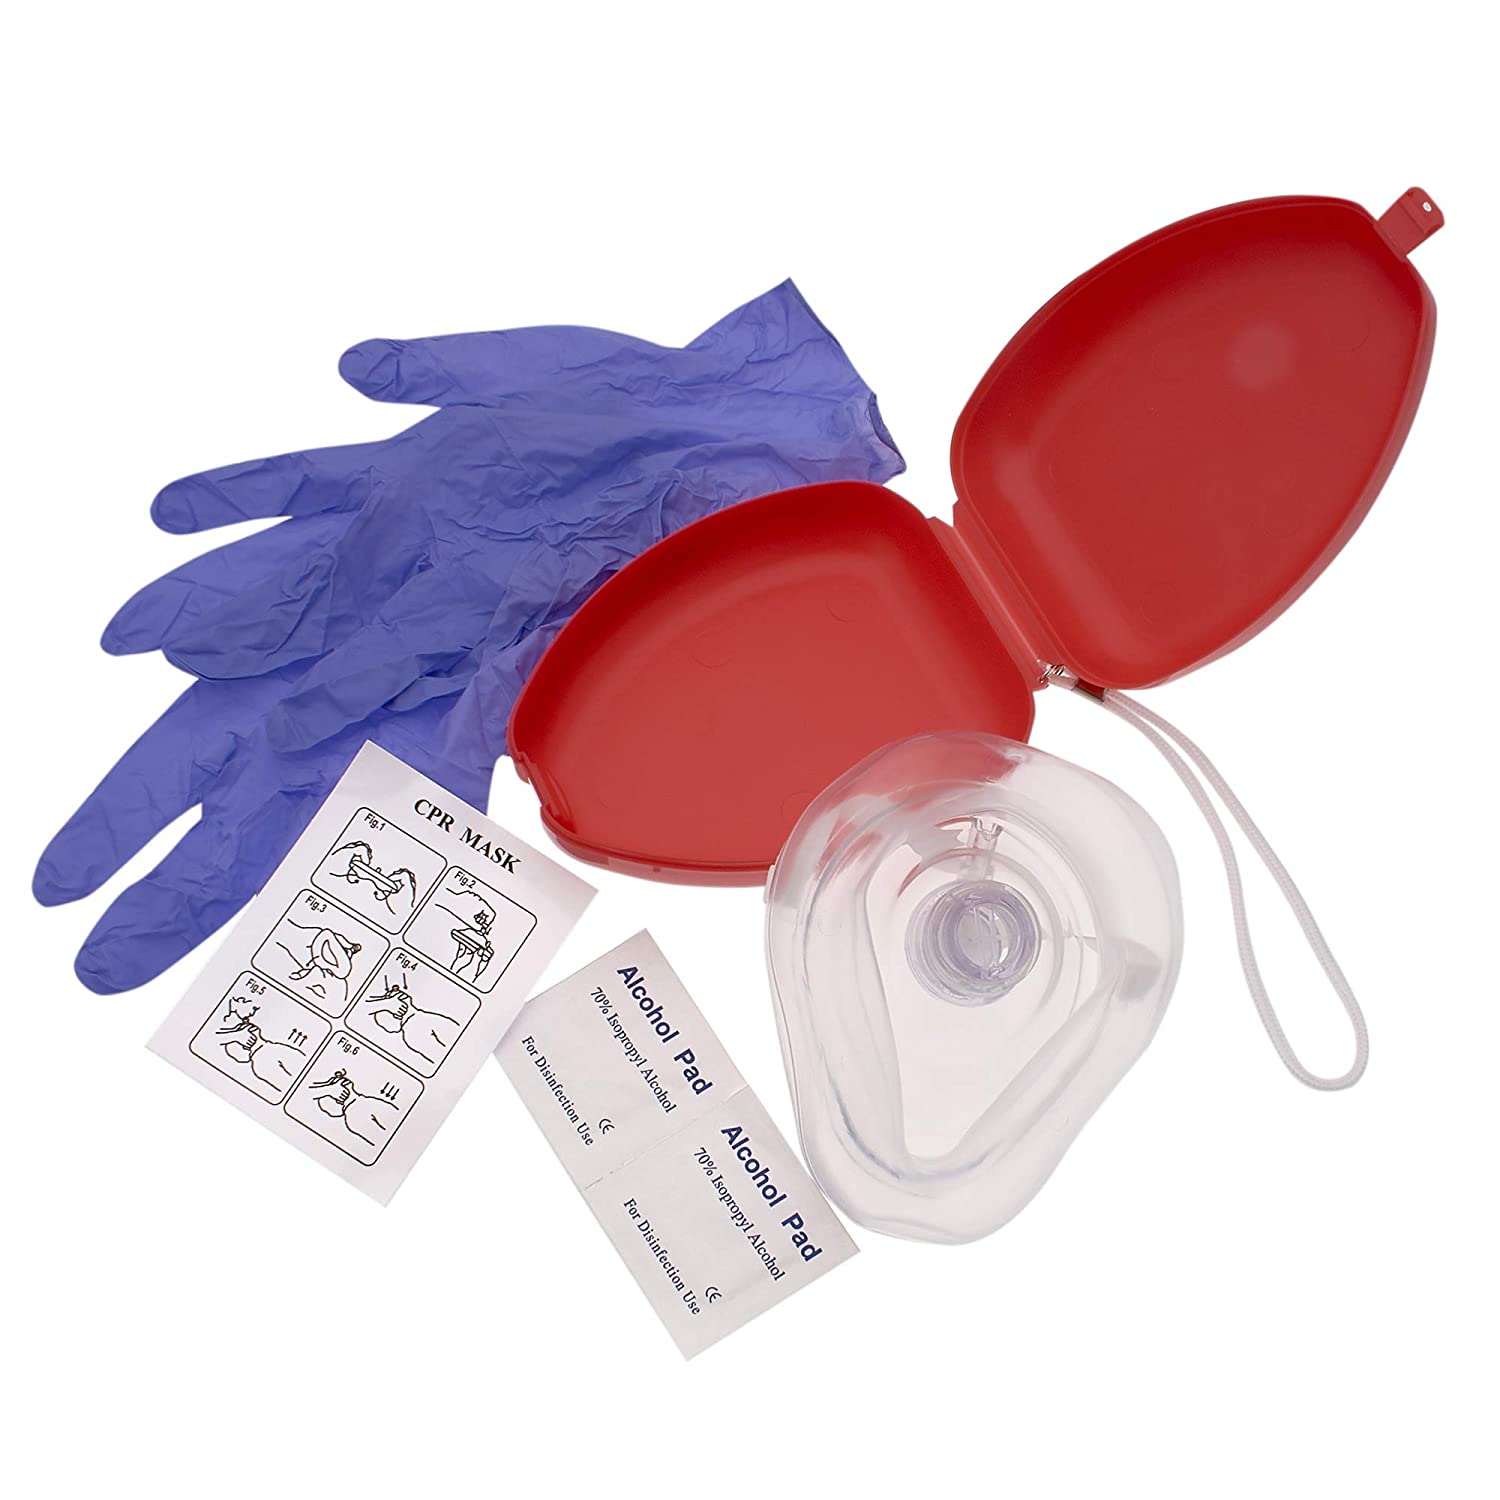 Masque de RCR médical de poche pour adultes de premiers soins